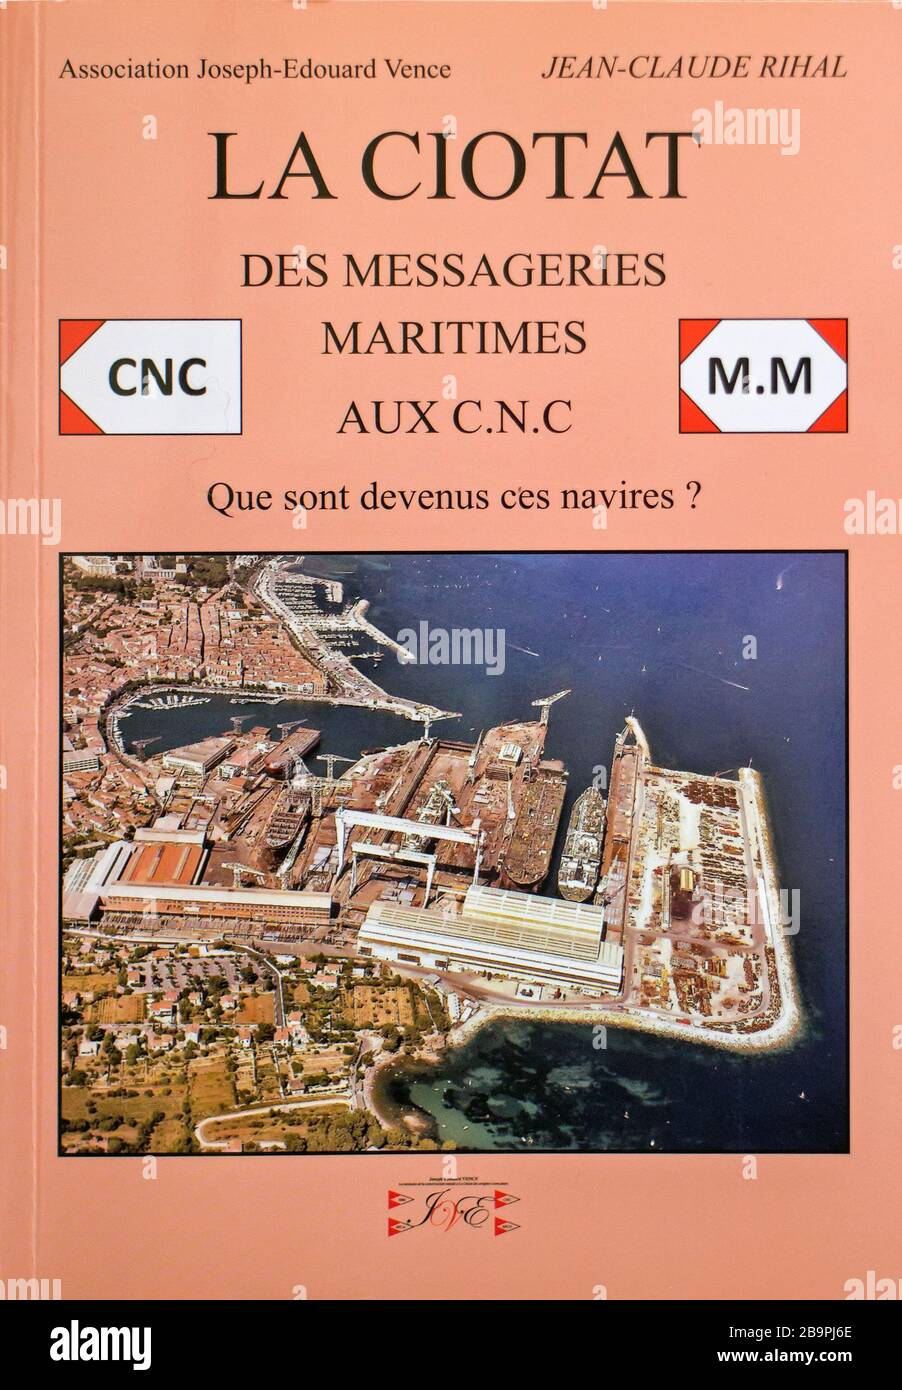 Musée de la Construction Navale, La Ciotat: Verzeichnis der Schiffe, die von der CNC-Steuerung von Jean-Claude RIHAL erstellt wurden, herausgegeben von der Association Joseph-Edouard VERNE Stockfoto